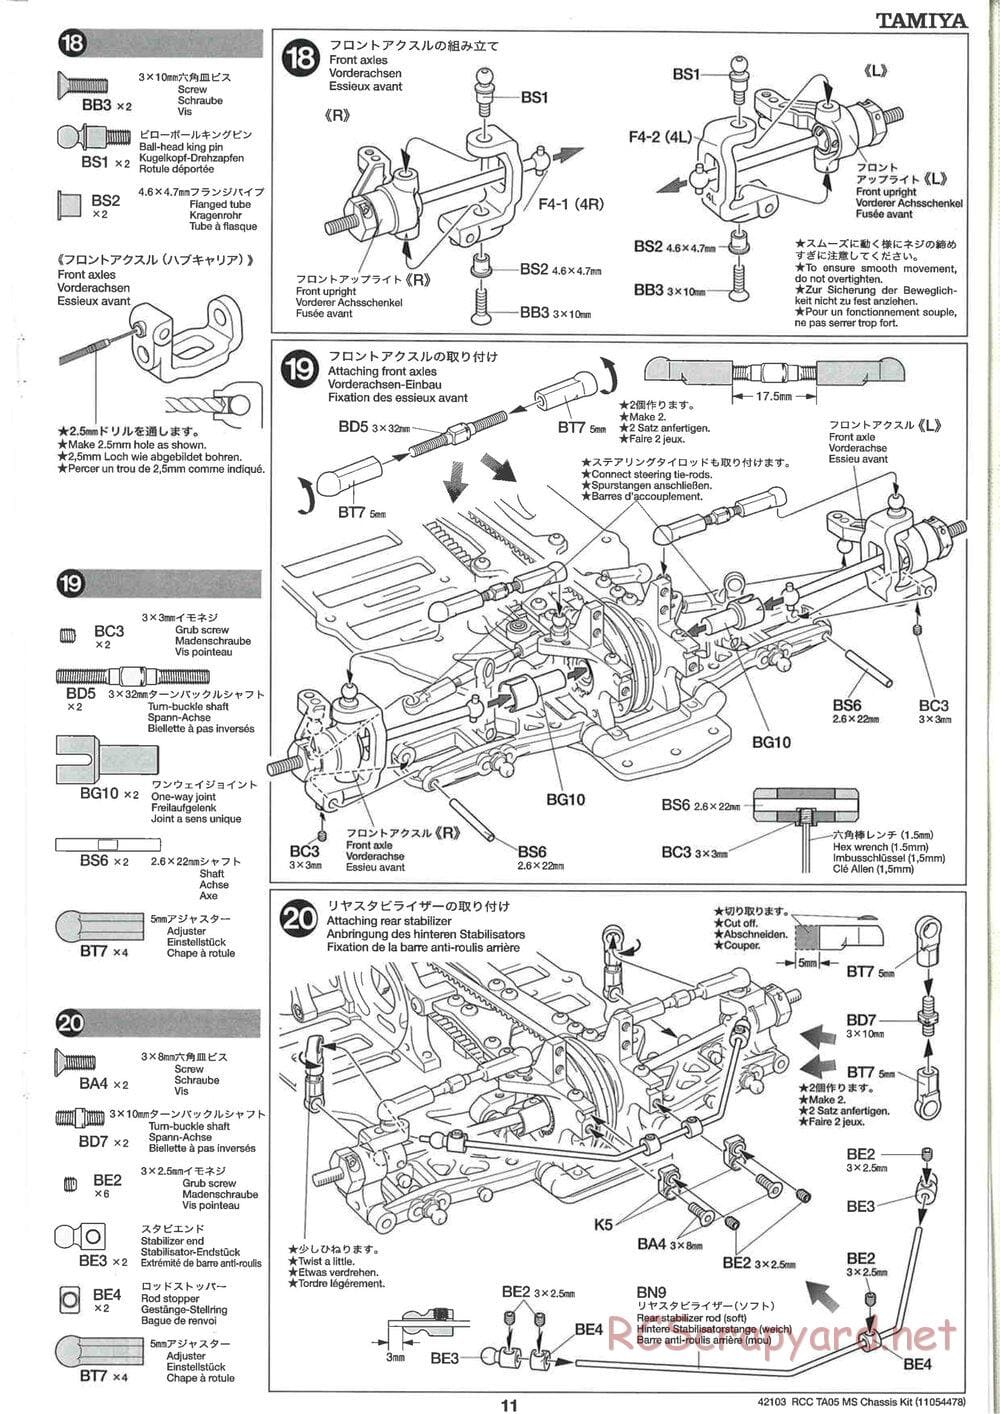 Tamiya - TA05 MS Chassis - Manual - Page 11